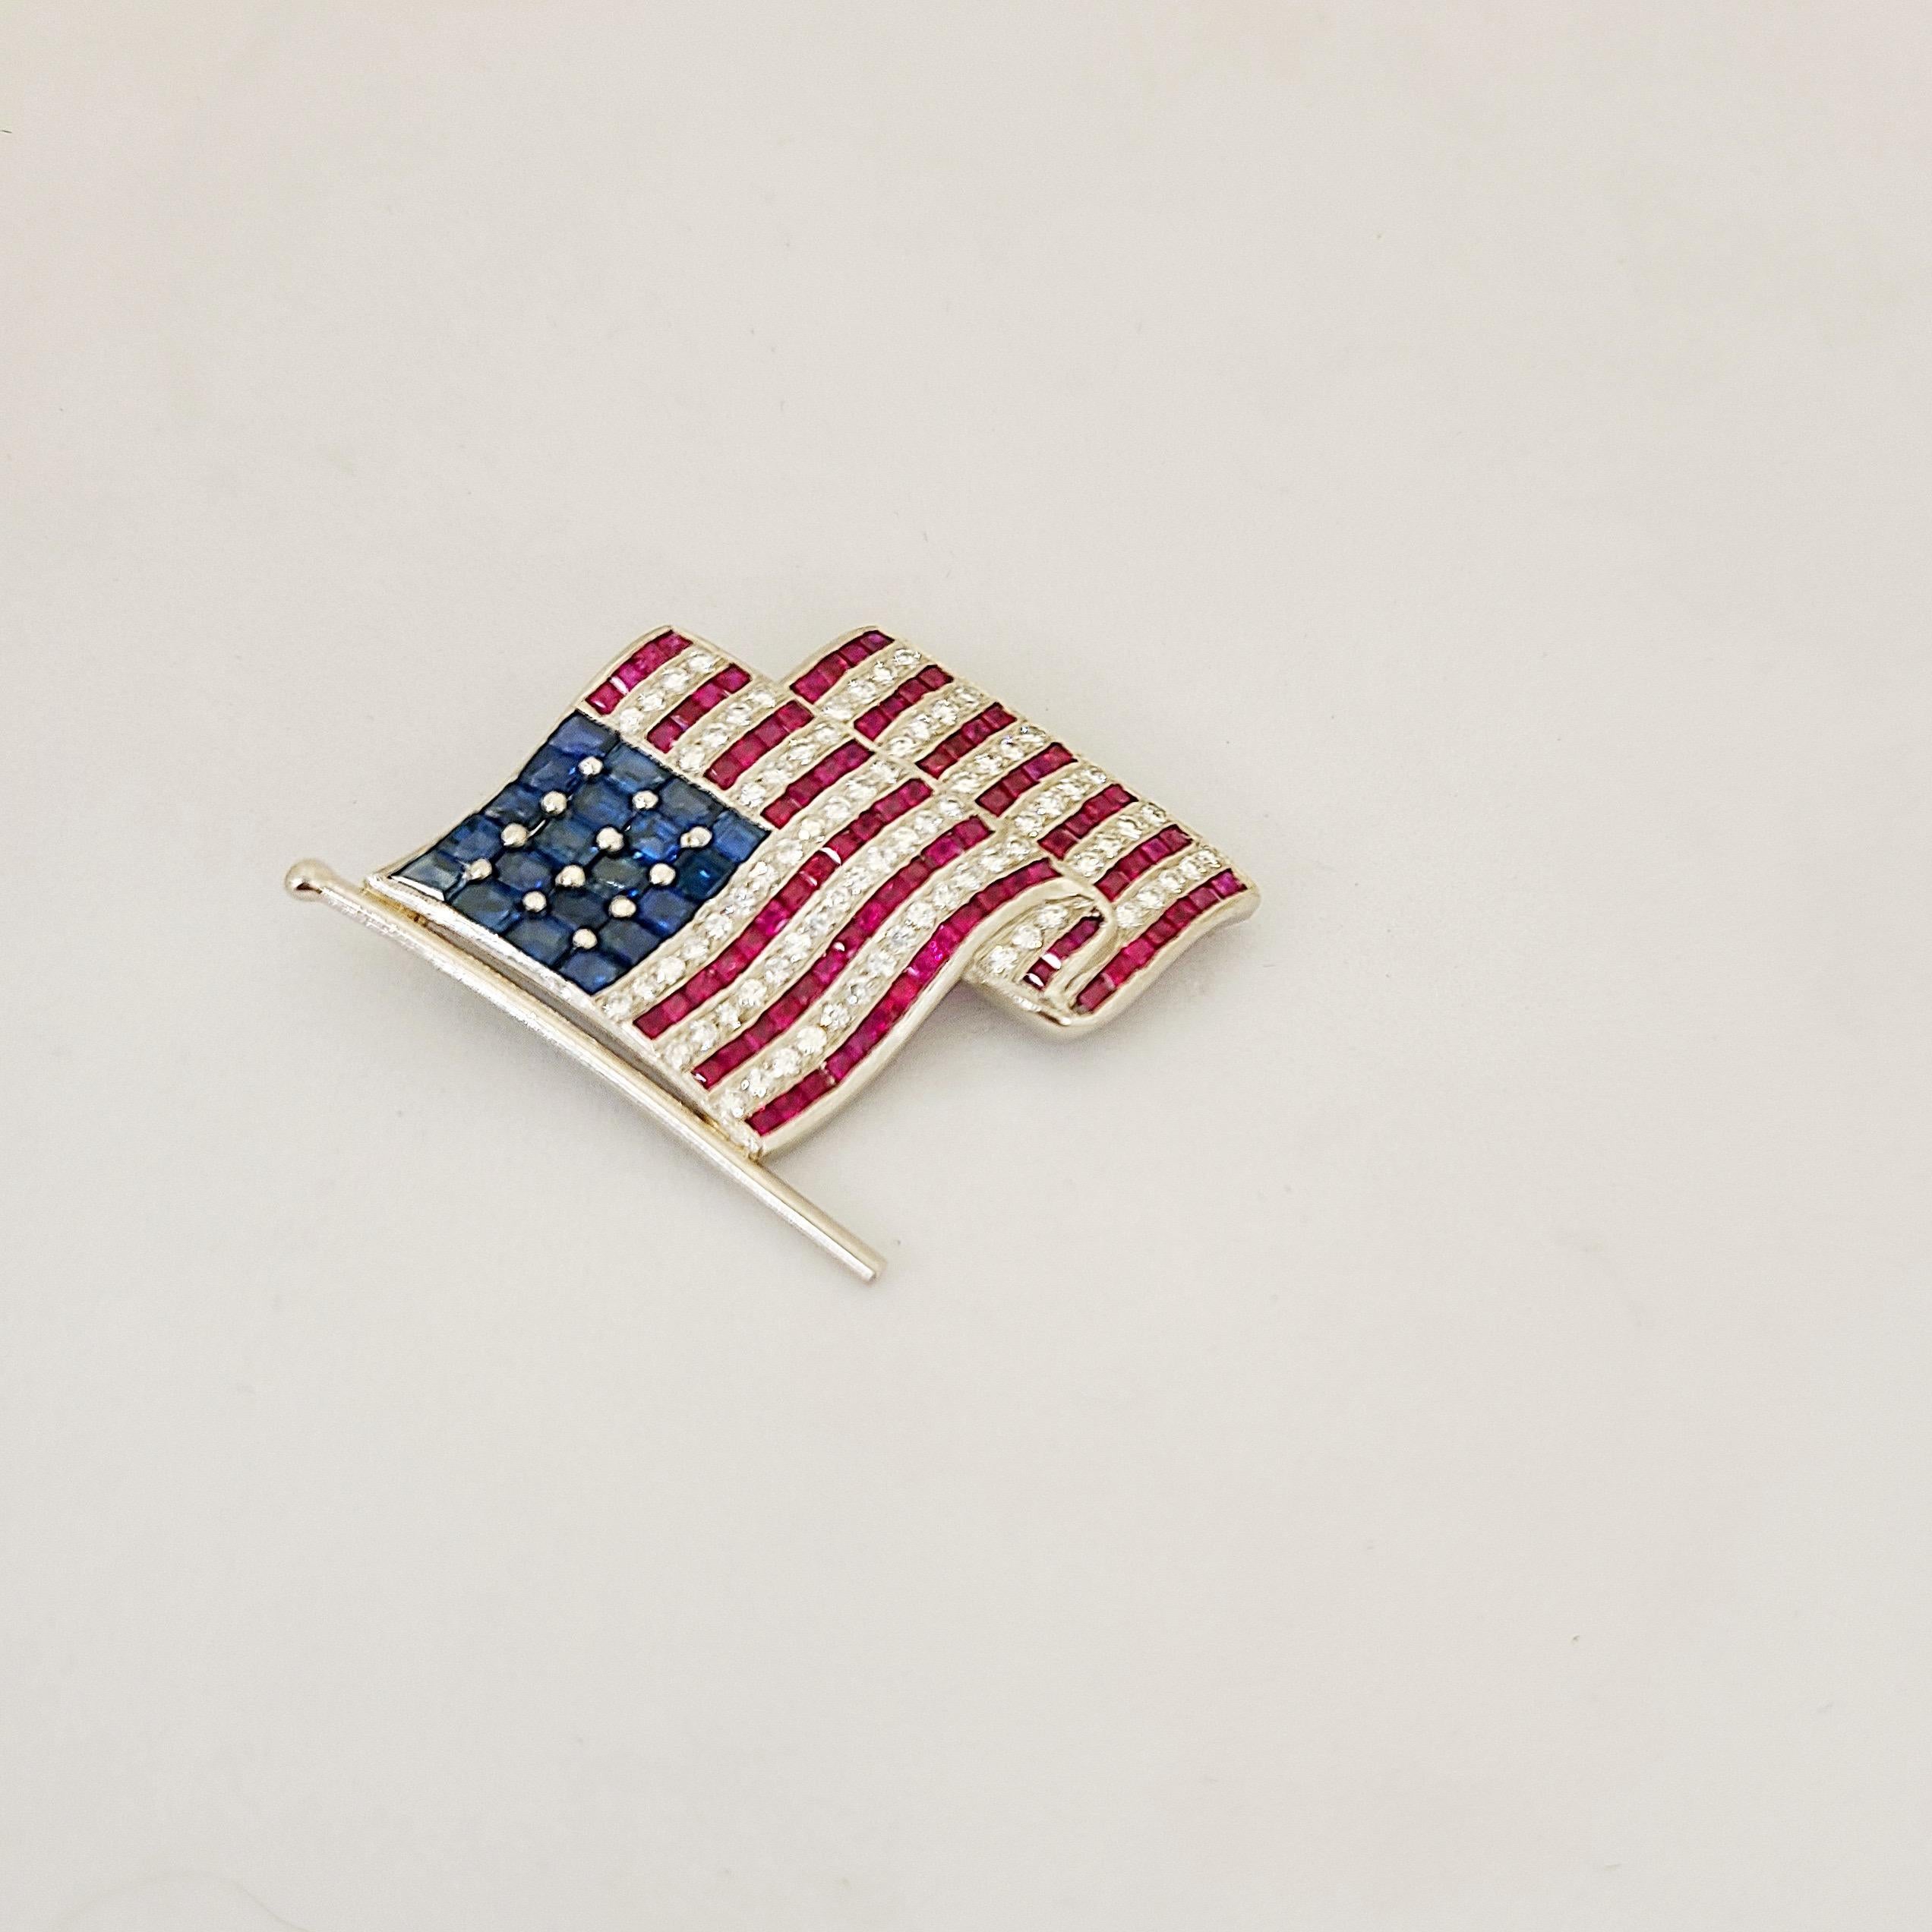 La broche parfaite pour 2020.
Notre broche drapeau américain est sertie de diamants ronds brillants et de rubis et saphirs taillés en carré. La broche mesure environ 1